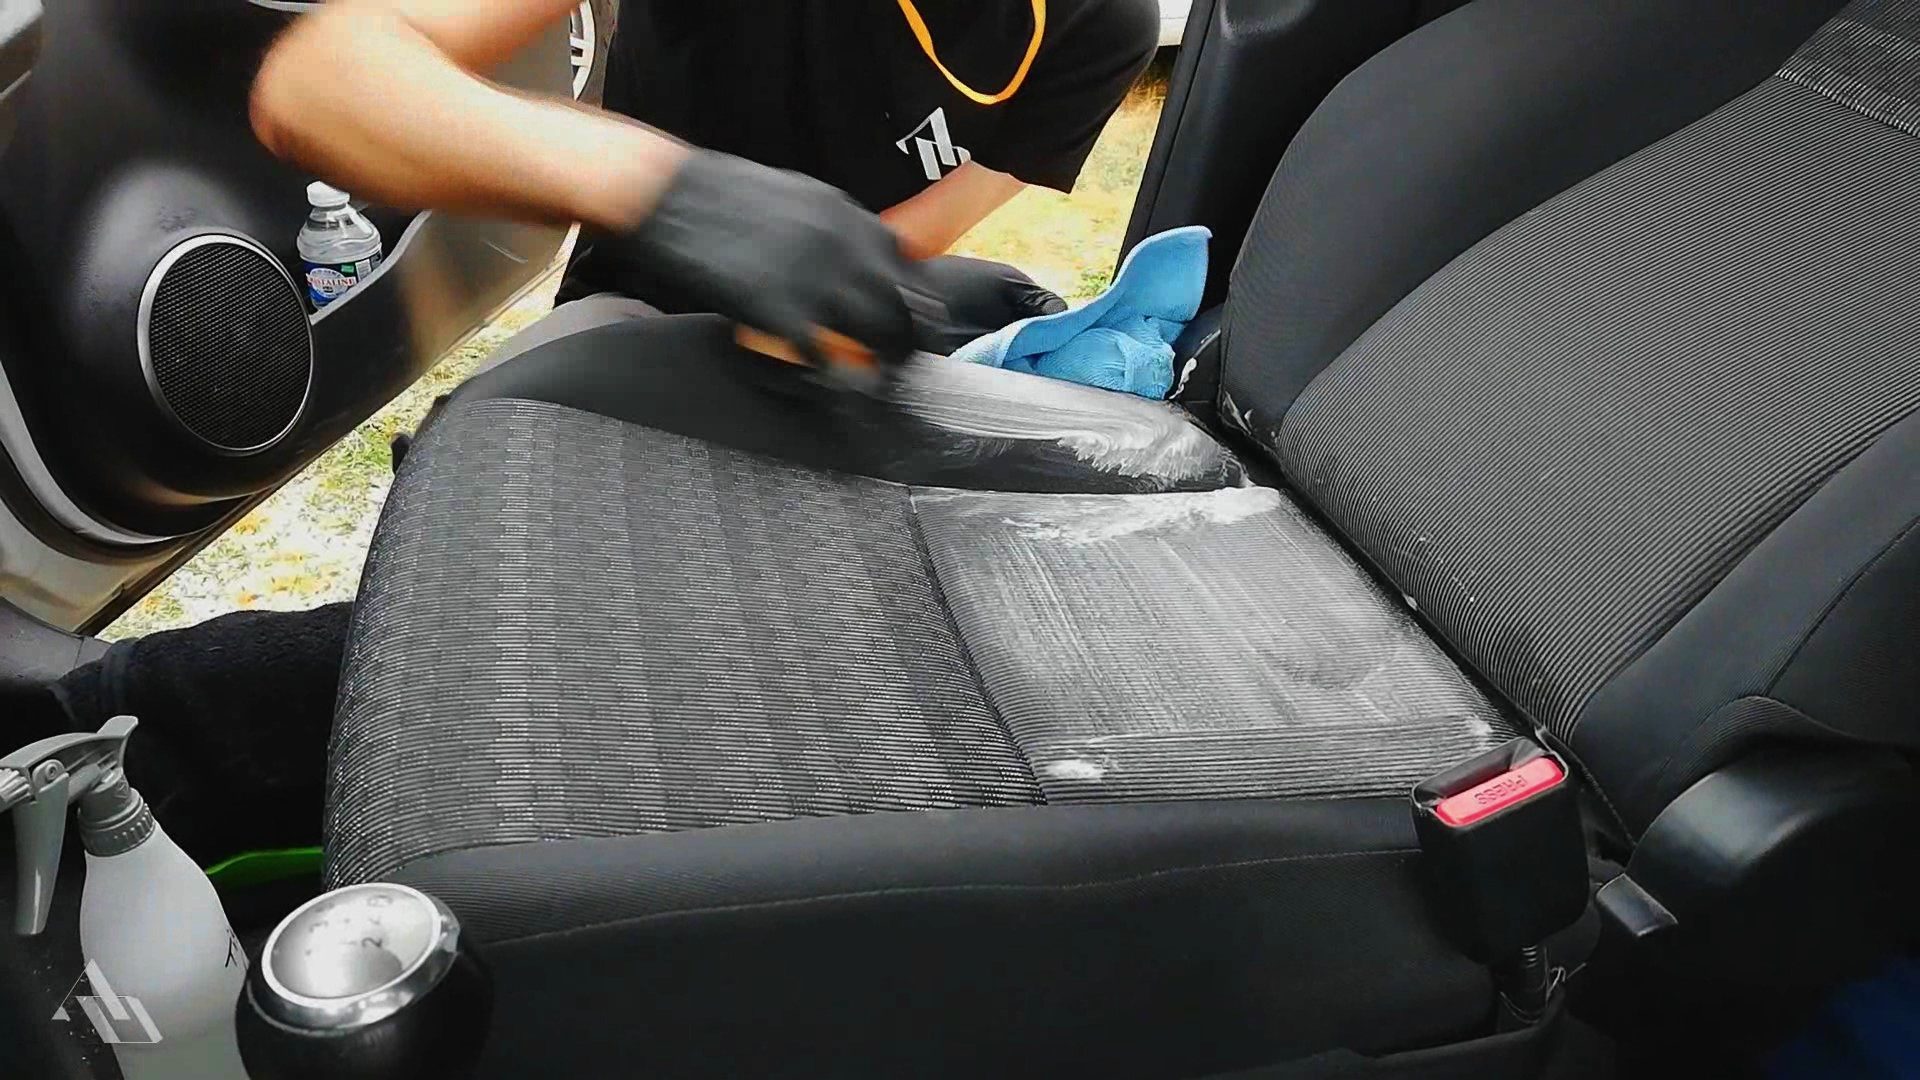 अपनी कार की सीटों को आसानी से कैसे साफ करें।